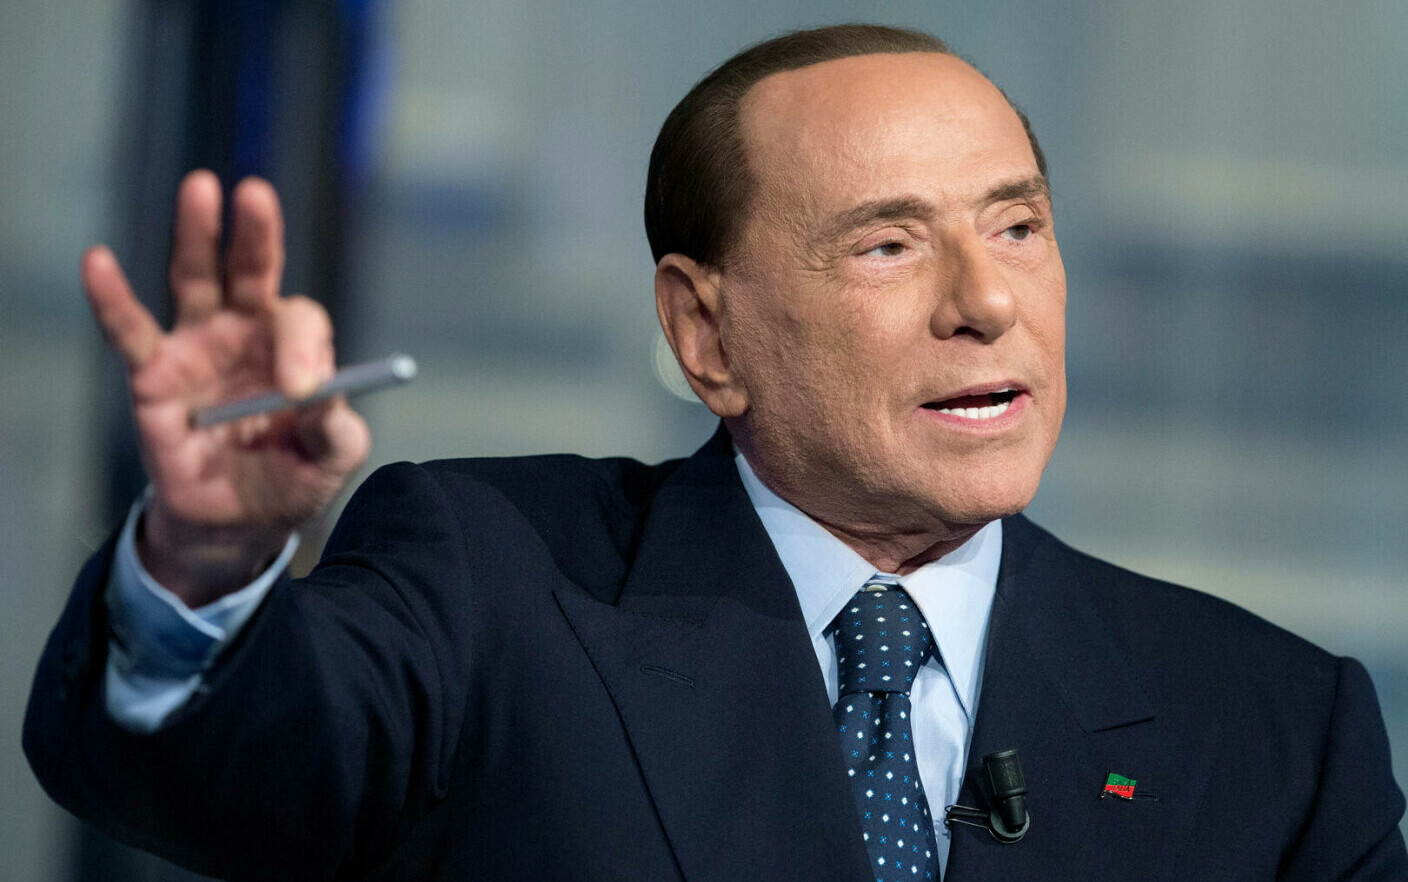 Una strada in Italia sarà intitolata a Silvio Berlusconi.  L’ex primo ministro era solito passeggiare in questo posto